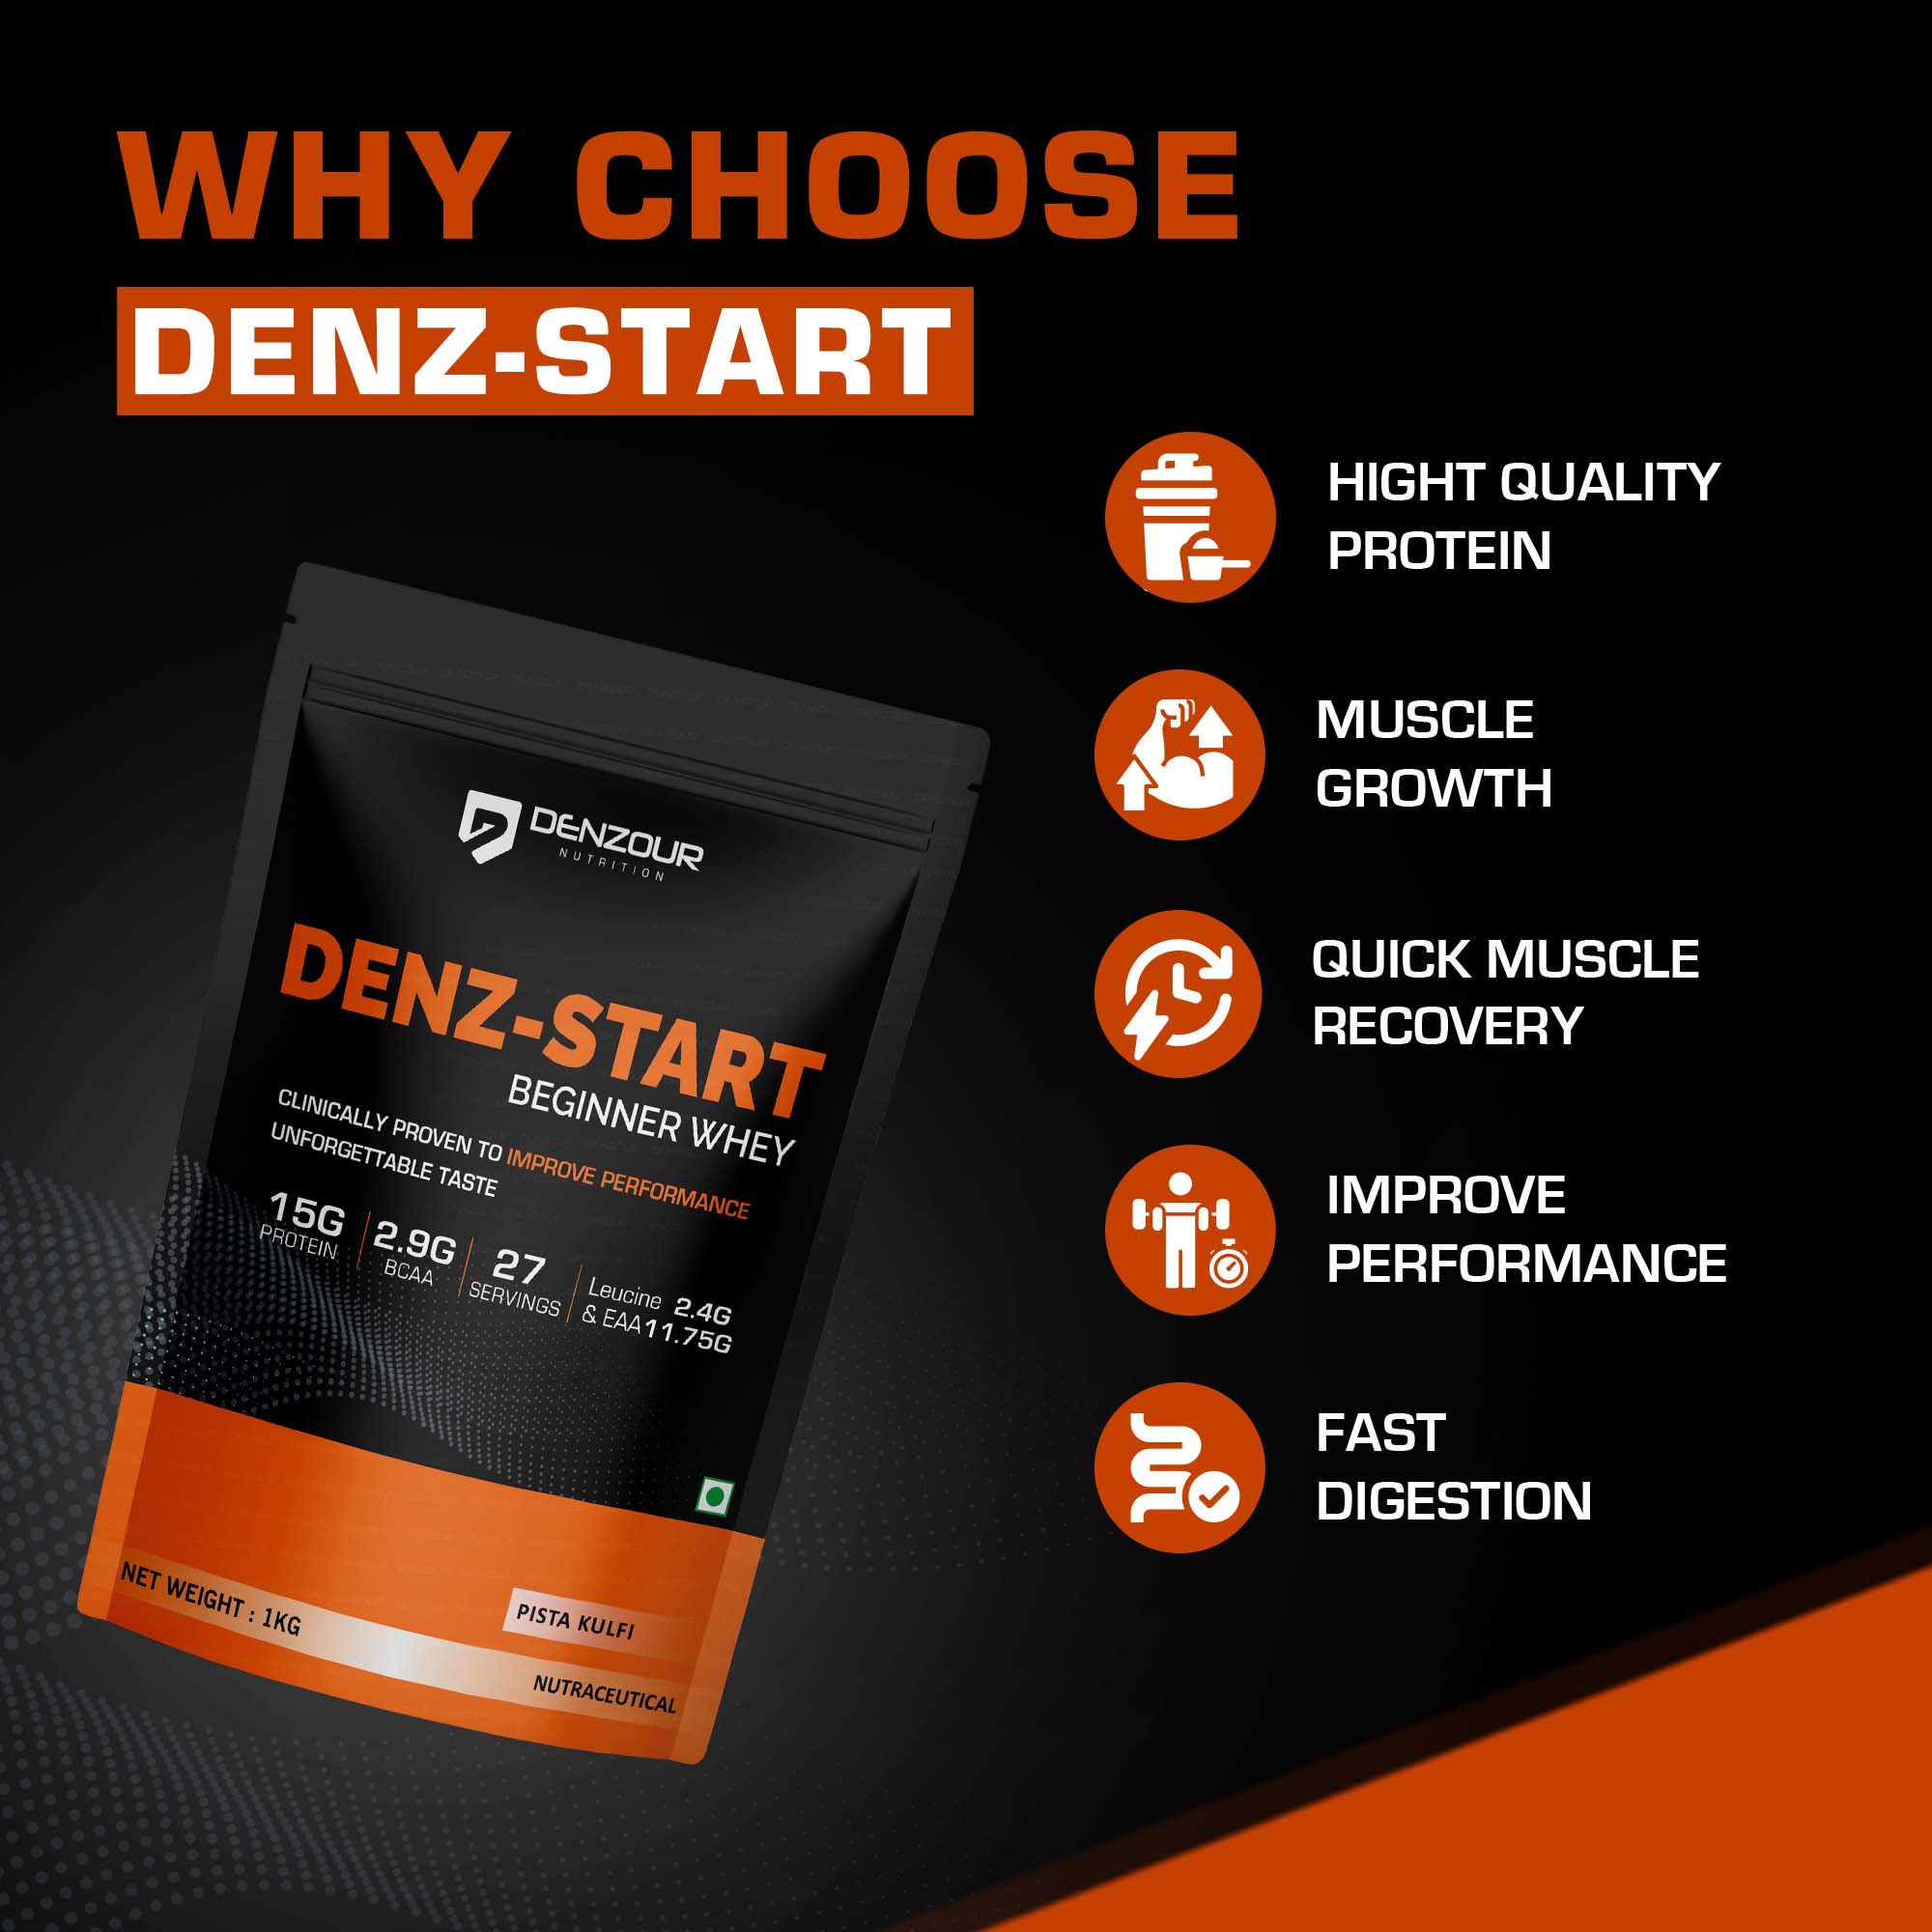 Denz-Start Beginner's Whey Protein